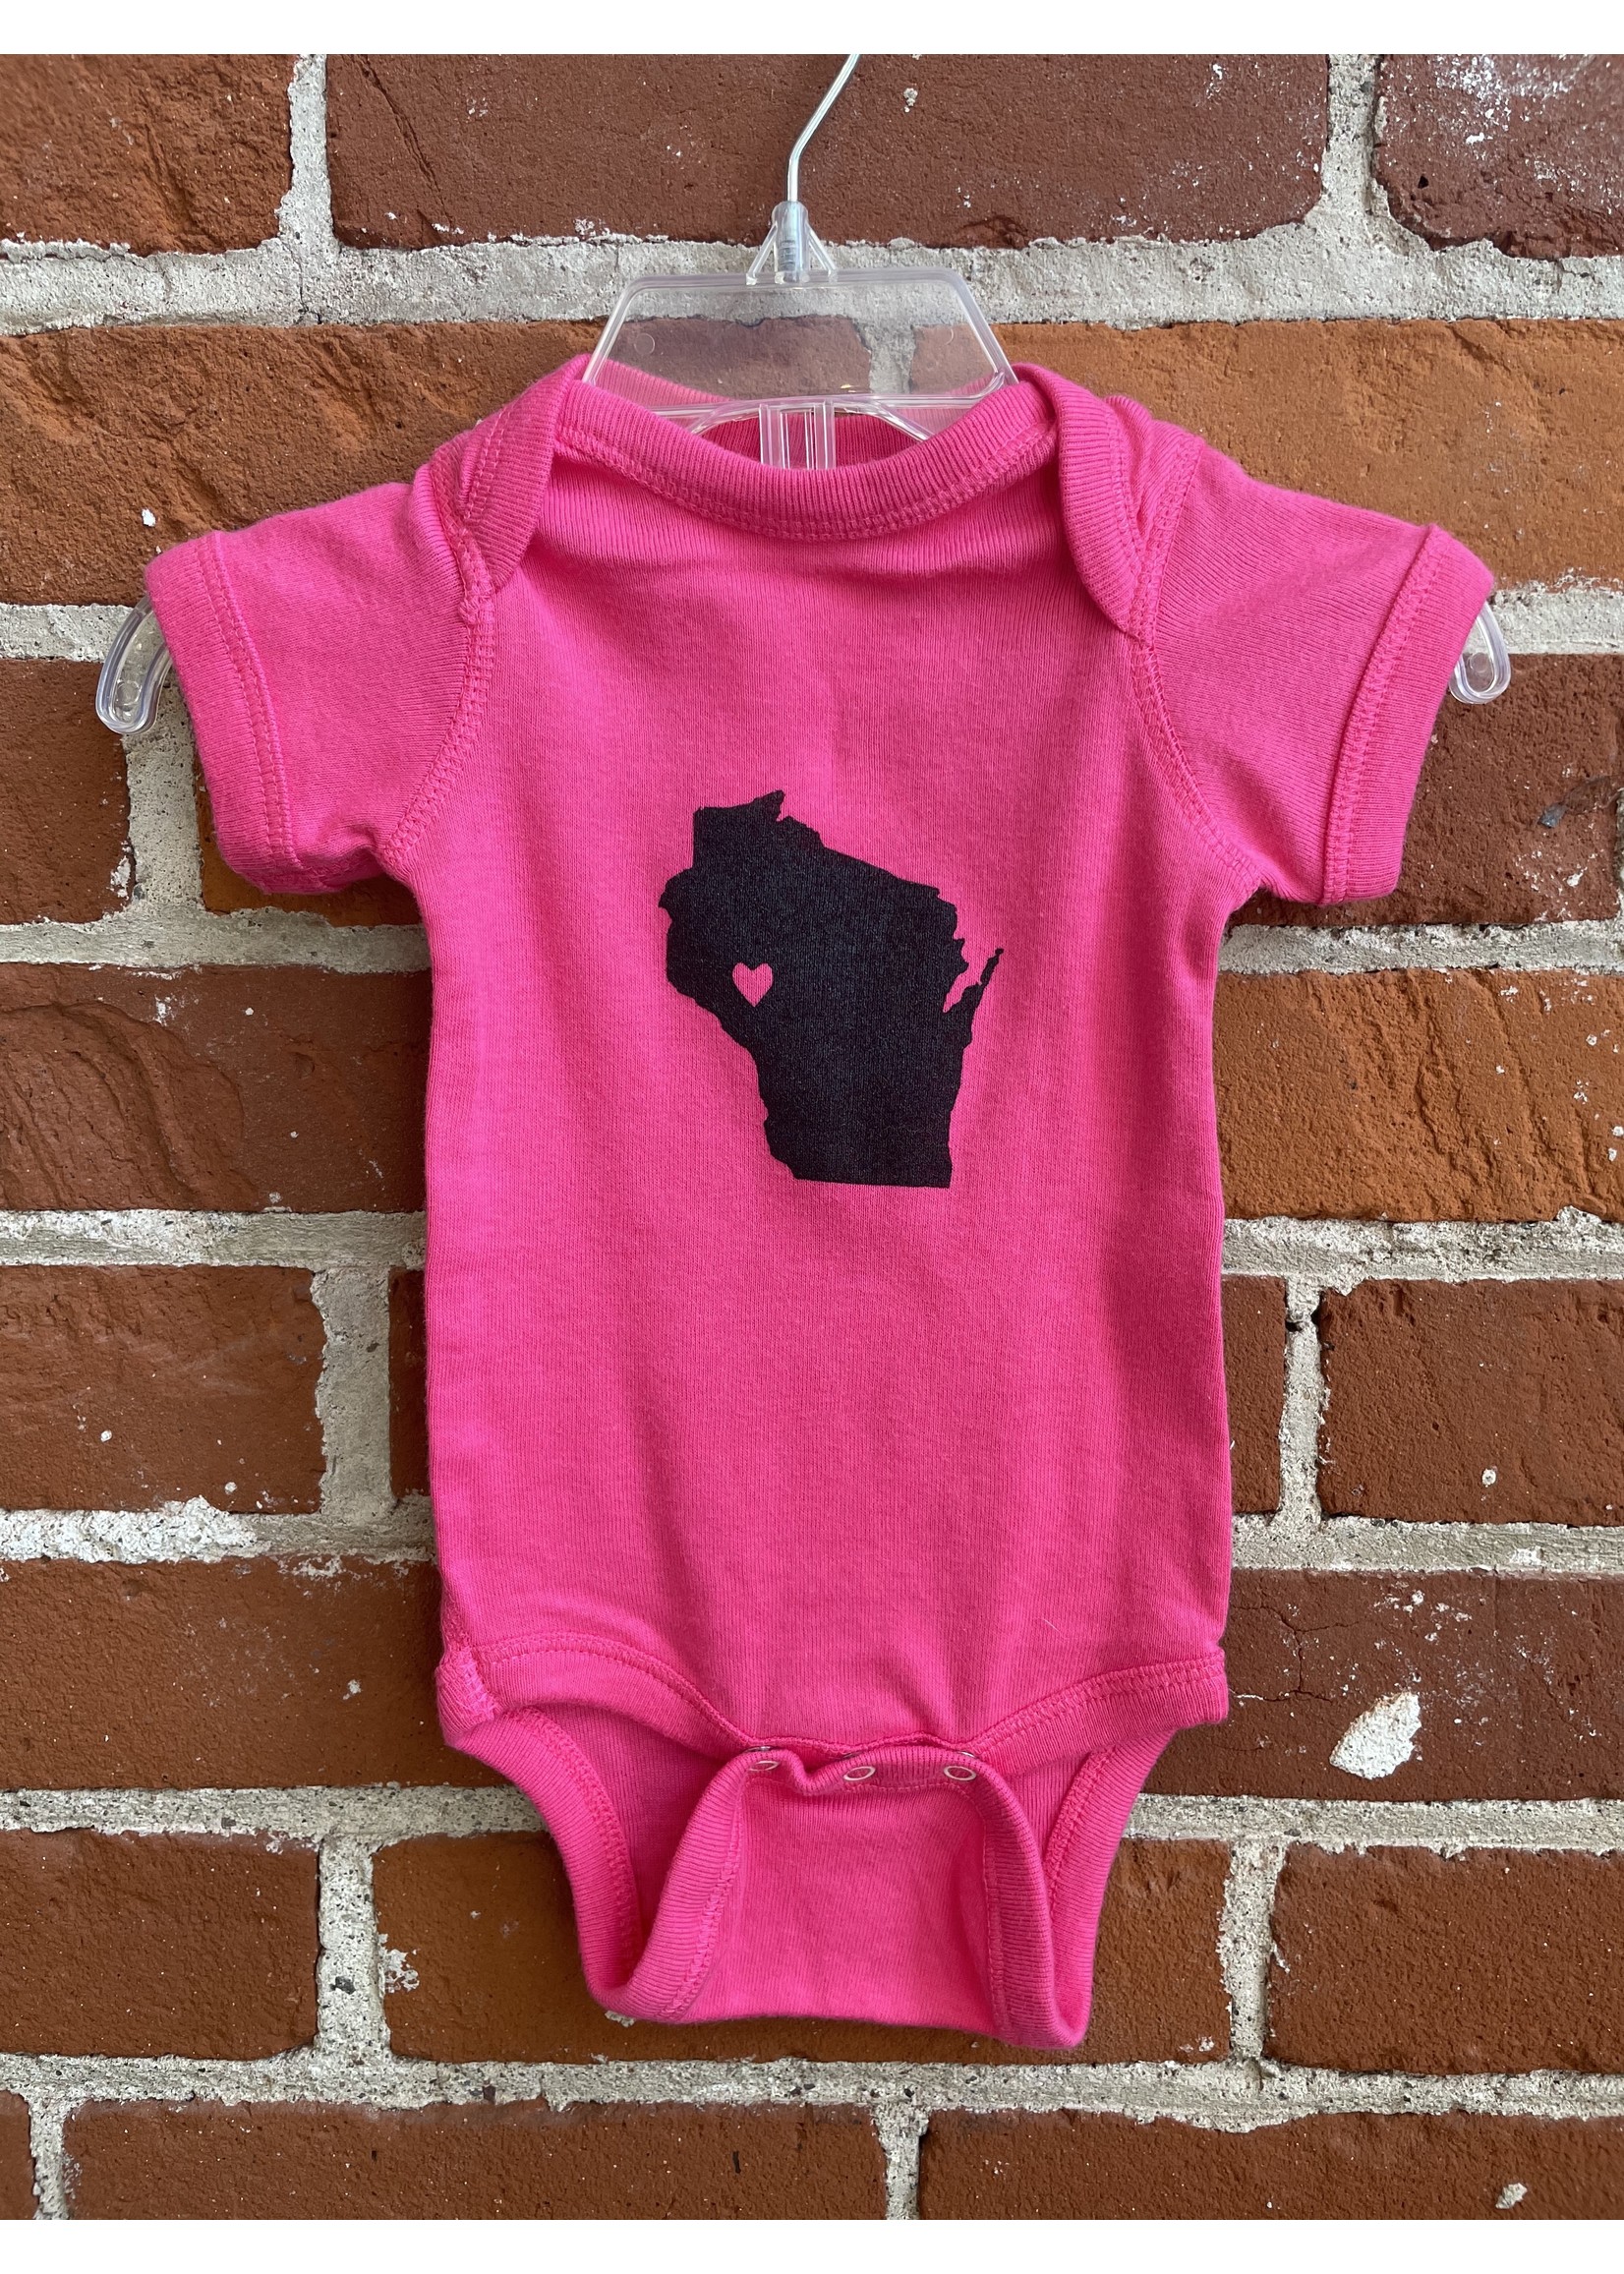 Wisconsin Love Baby Body Suit